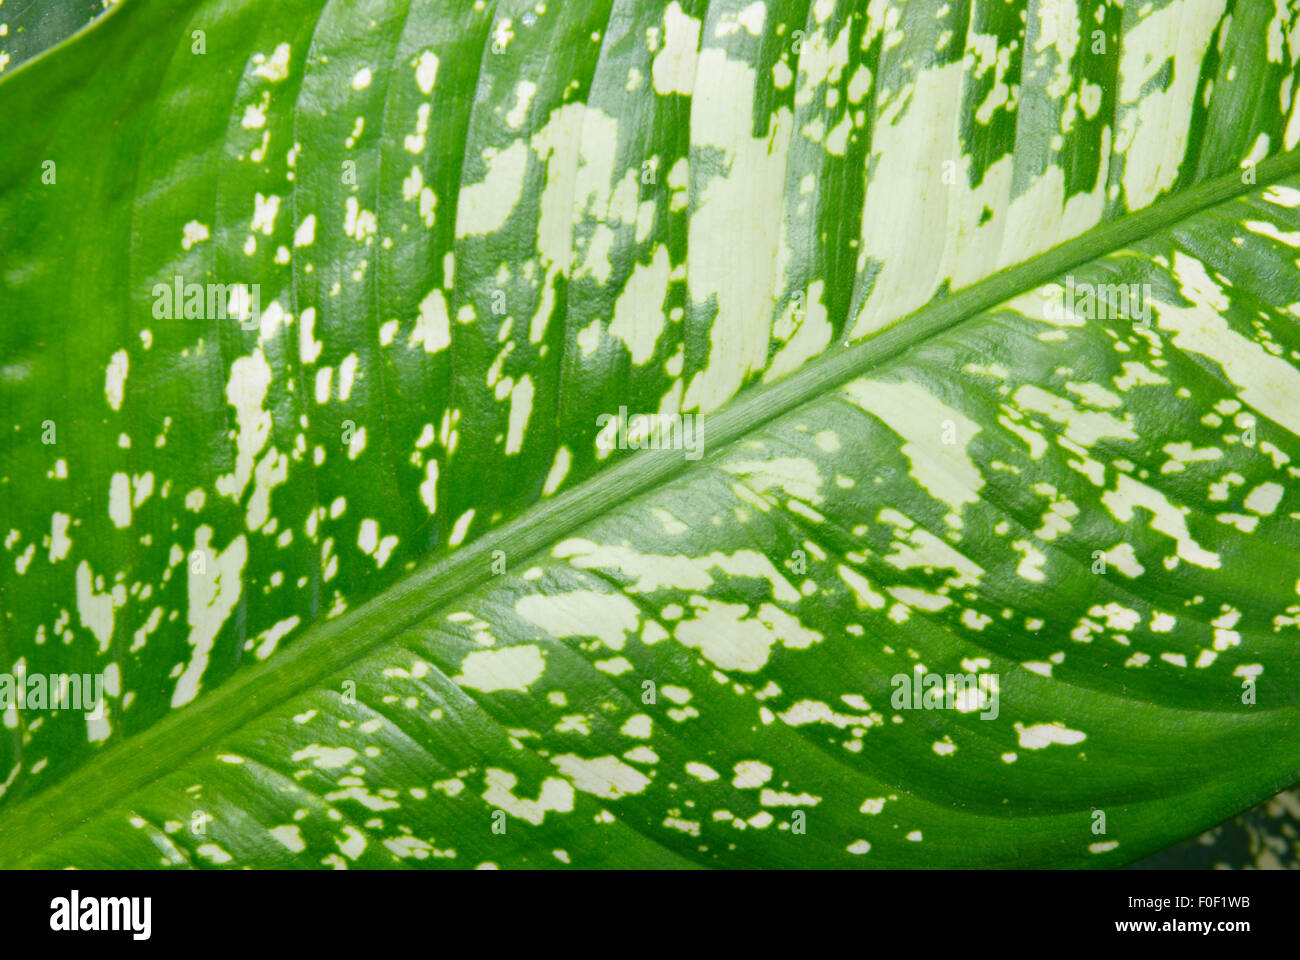 Green leaf of Dieffenbachia. Stock Photo